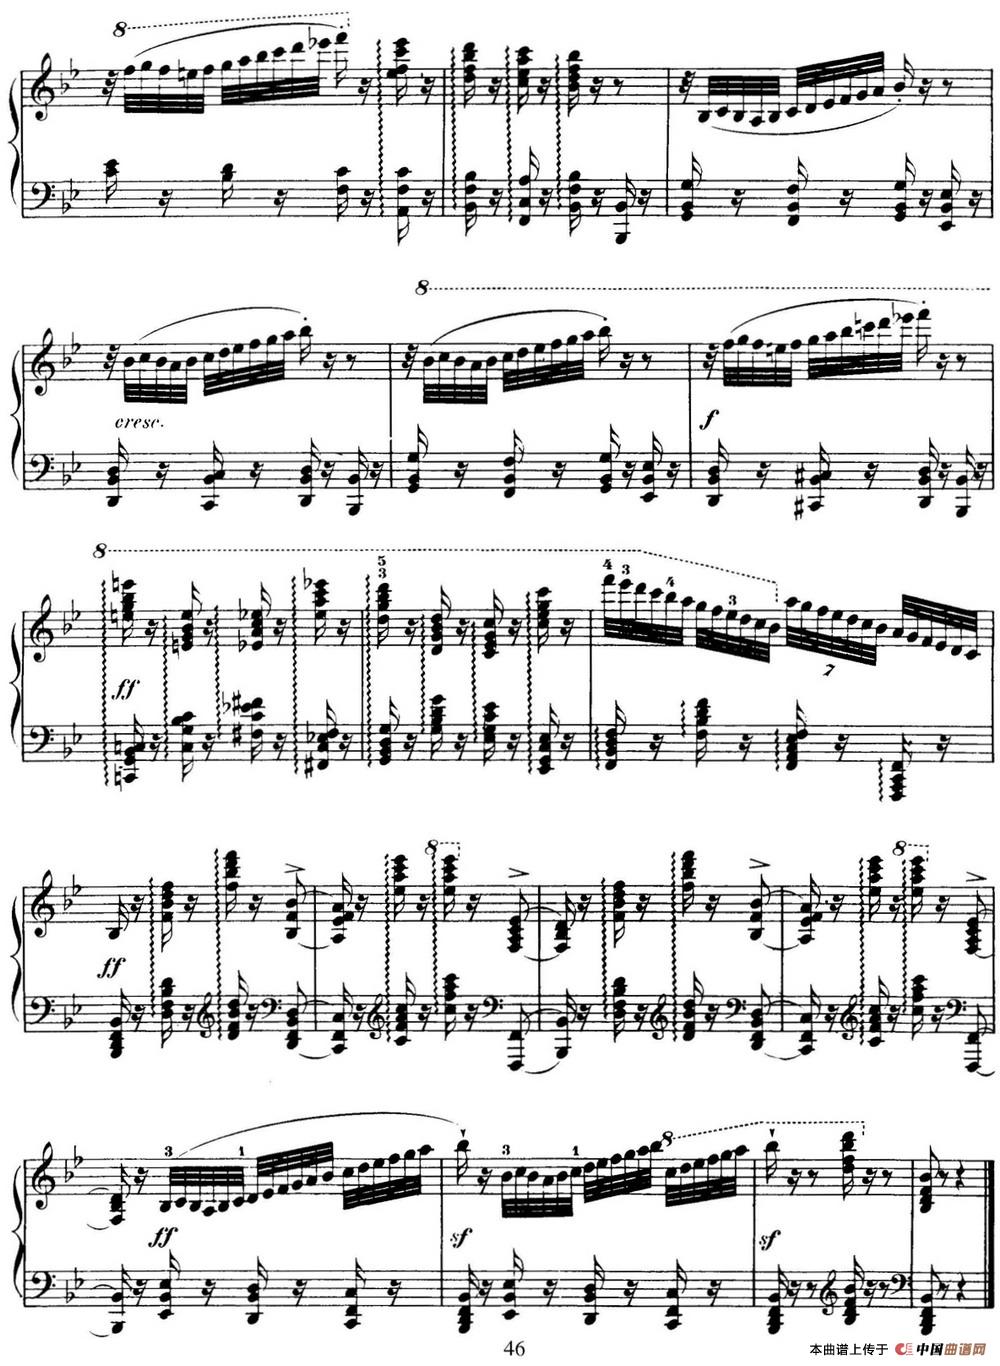 50首车尔尼Op.740钢琴手指灵巧技术练习曲（NO.13）(1)_-C740_页面_046.jpg